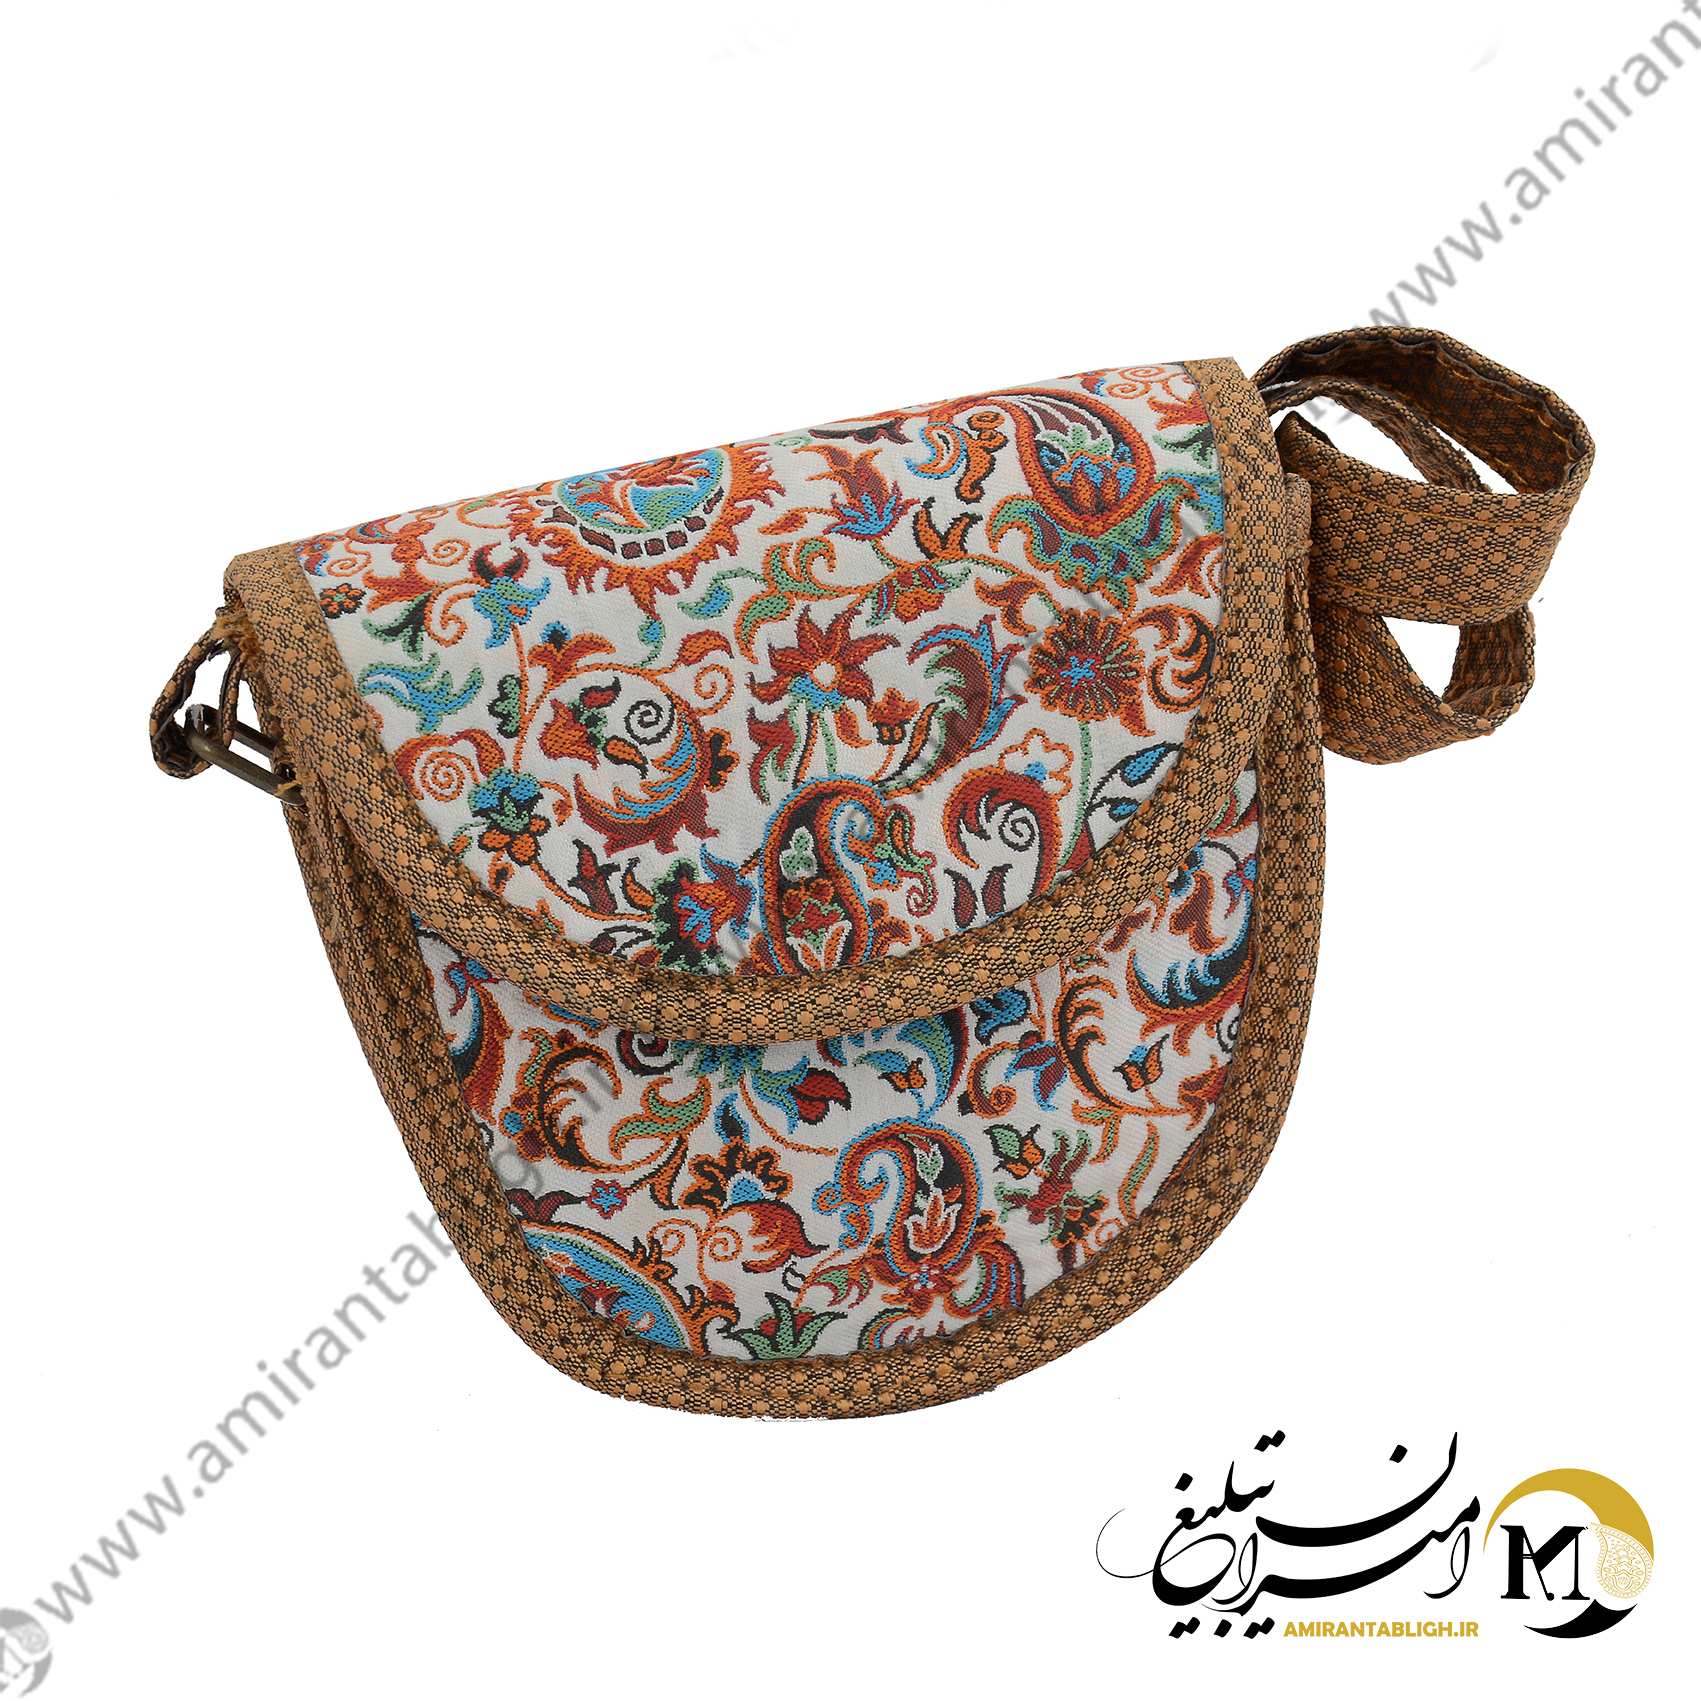 کیف سنتی اصفهان کد Kif-1701